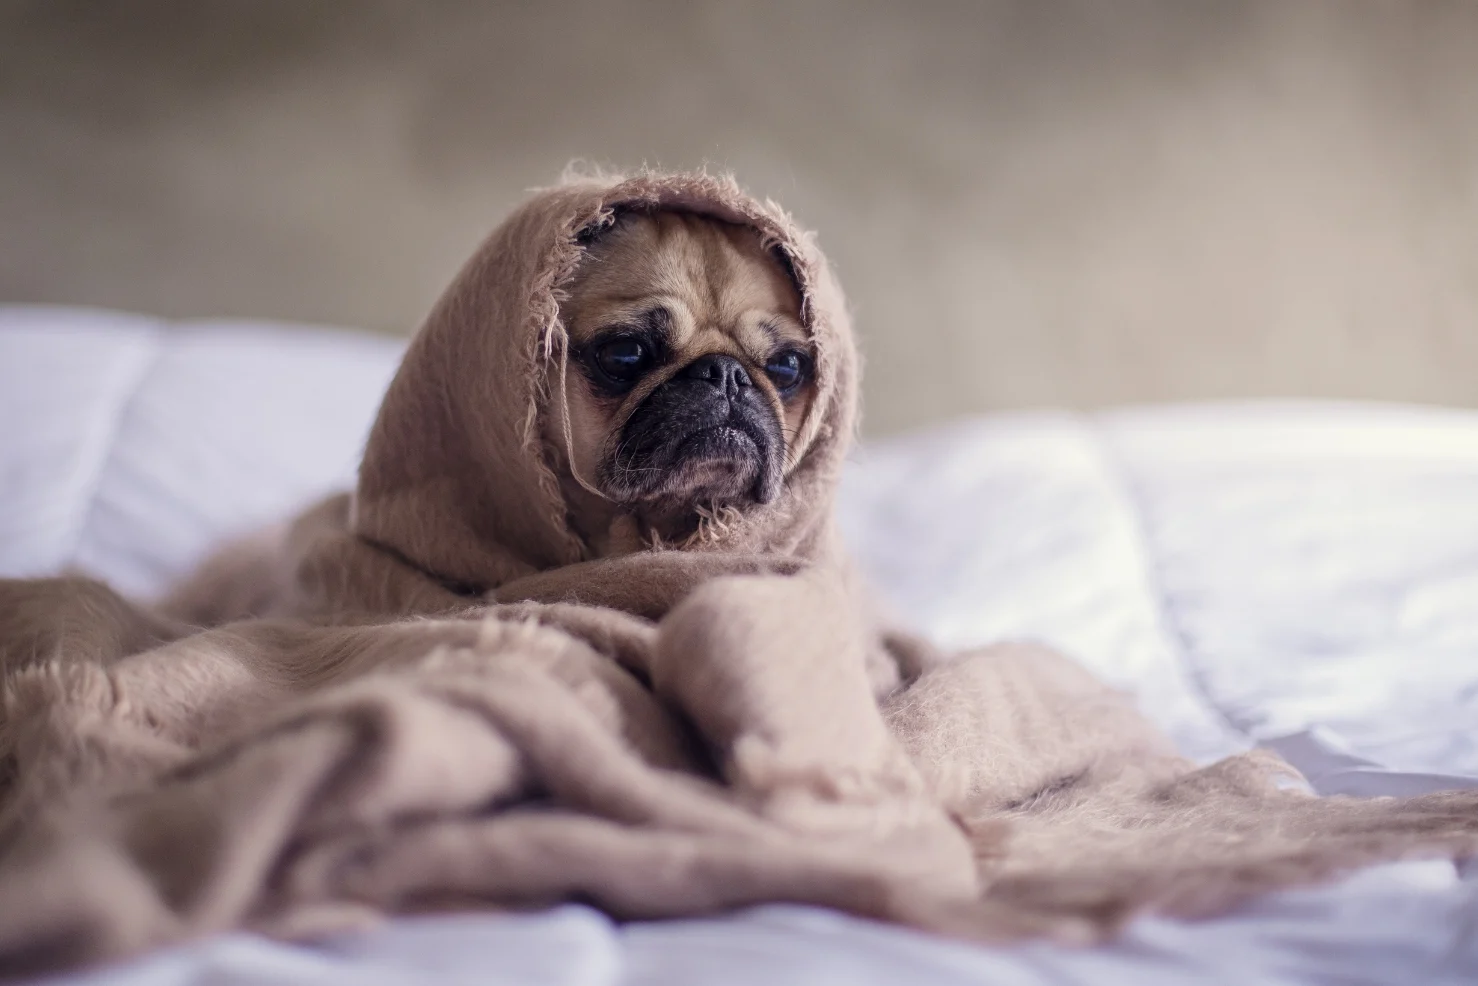 A grumpy pug dog in a blanket - keto flu assistance ideas